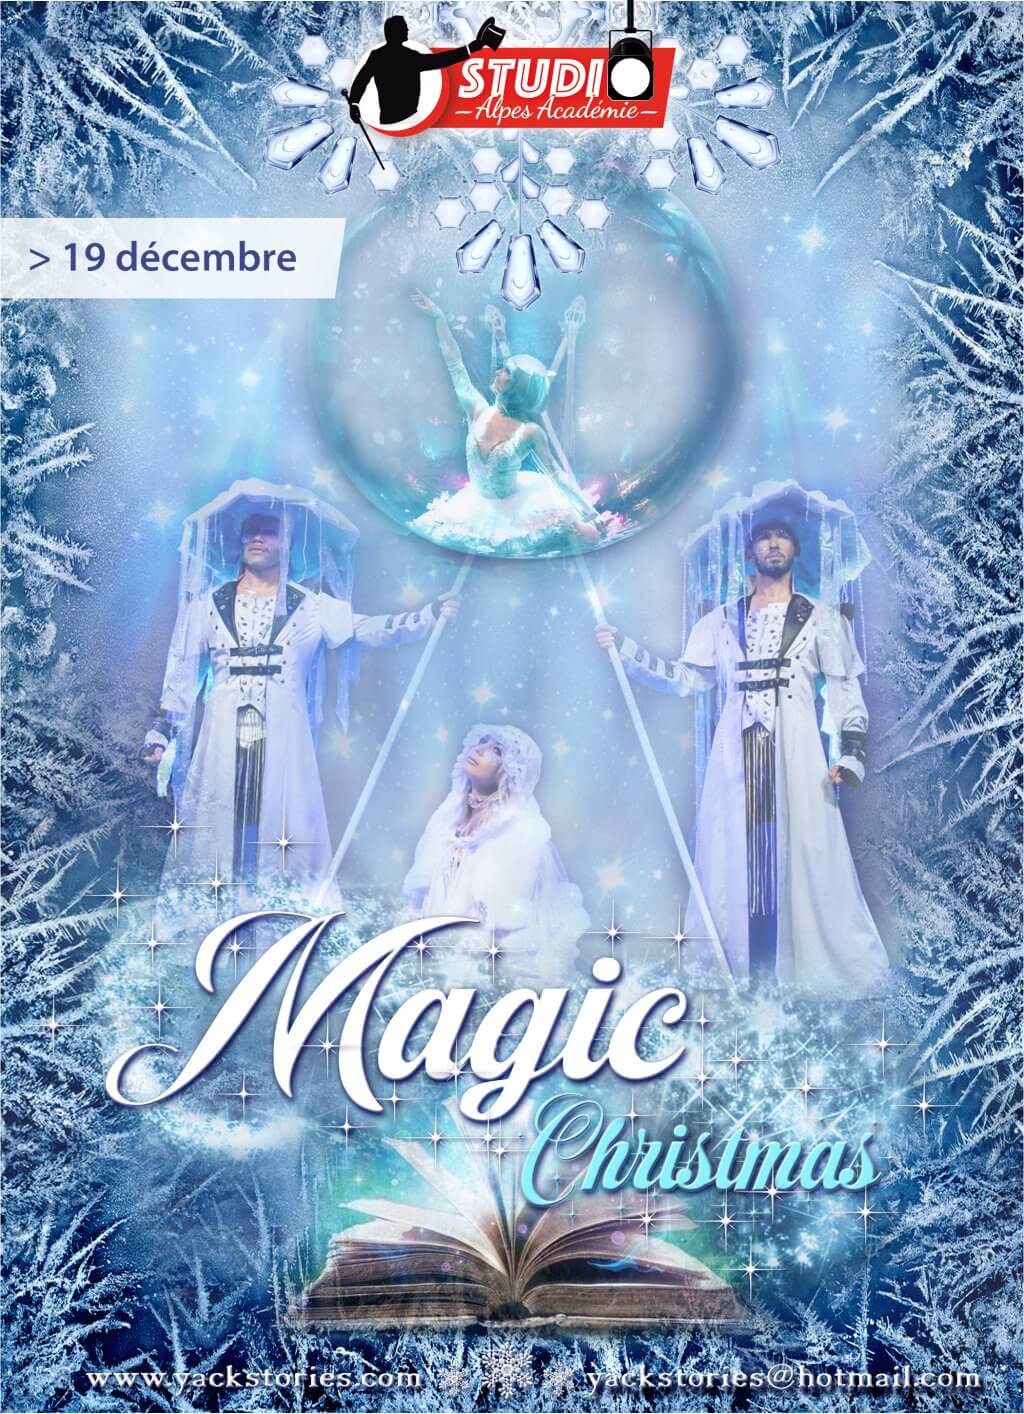 Magic Christmas - Un événement de Studio Alpes Académie